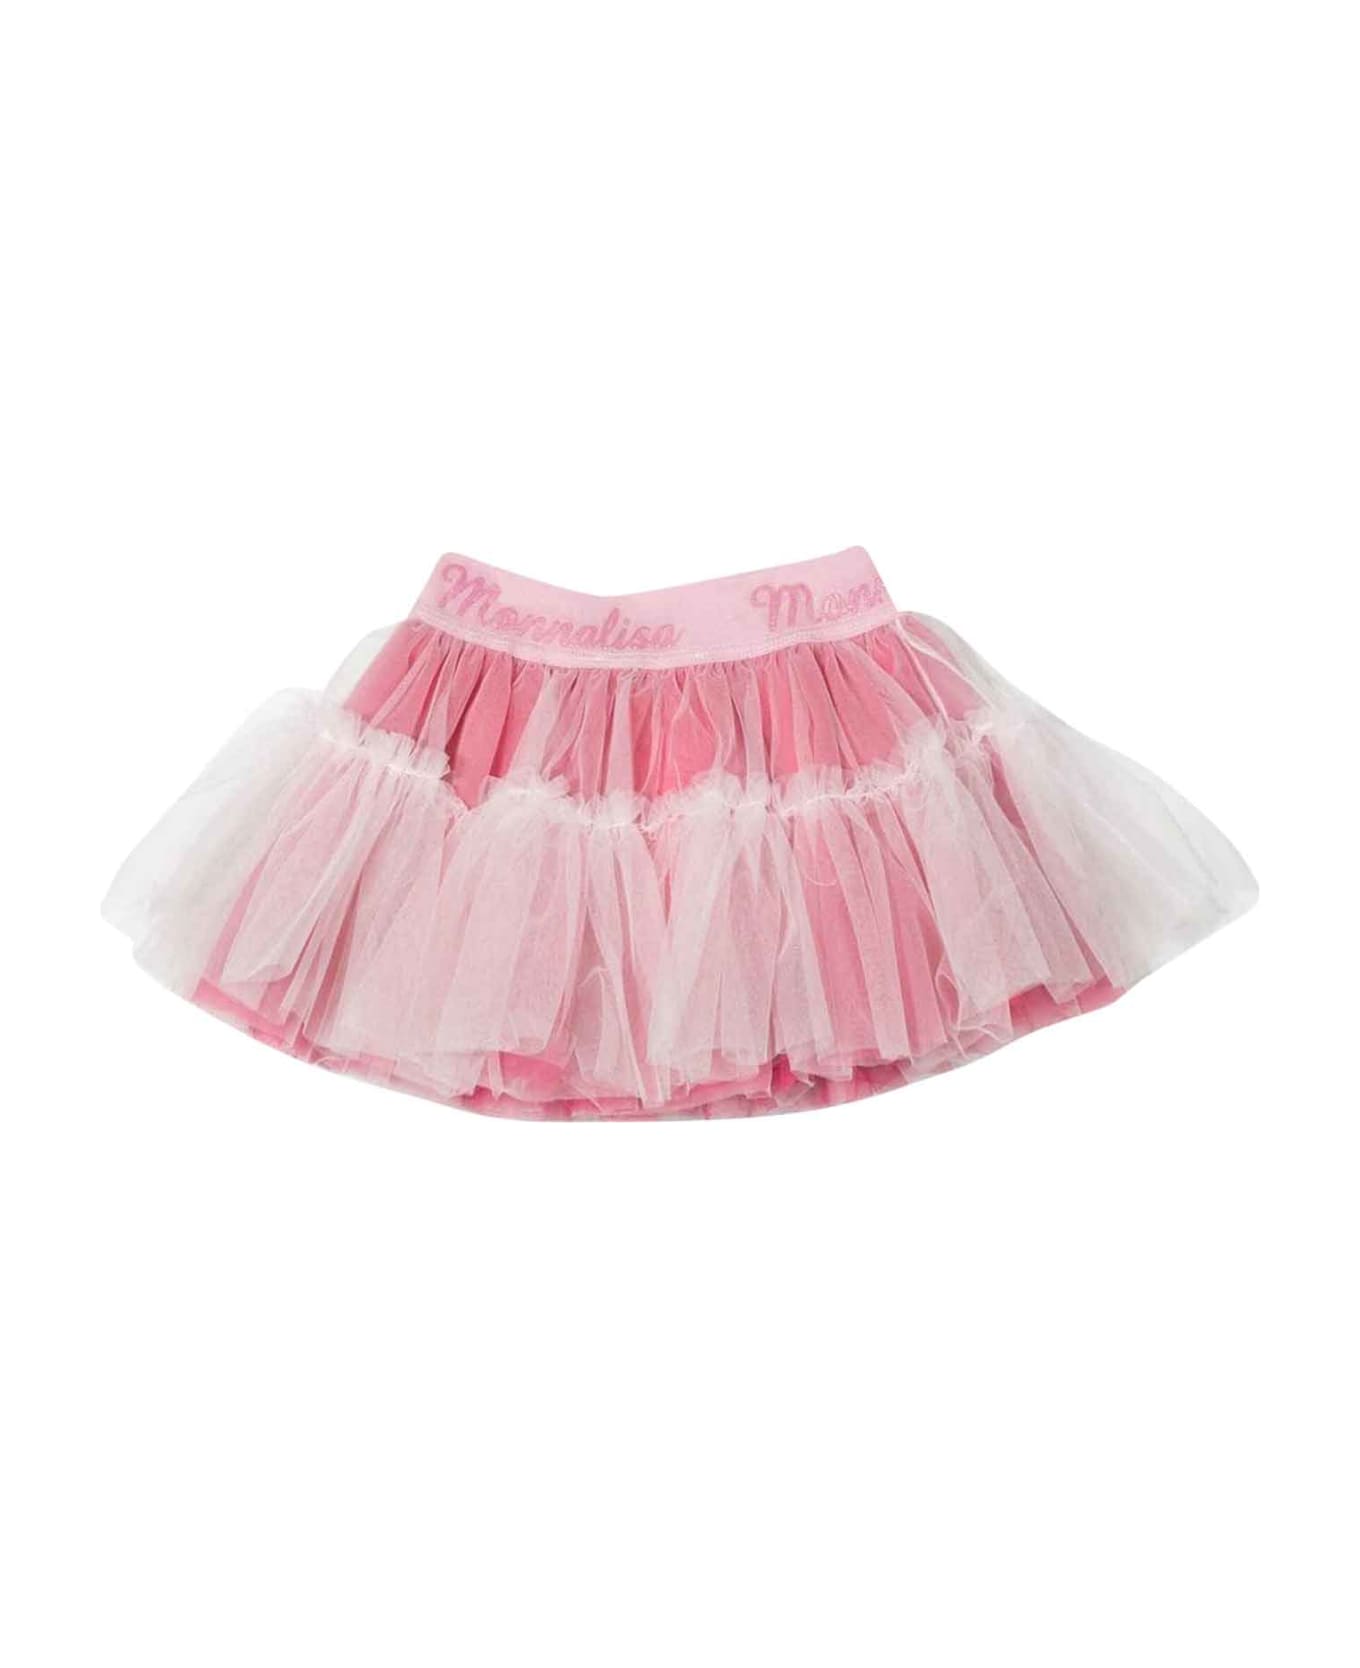 Monnalisa Pink Skirt Baby Girl - PINK